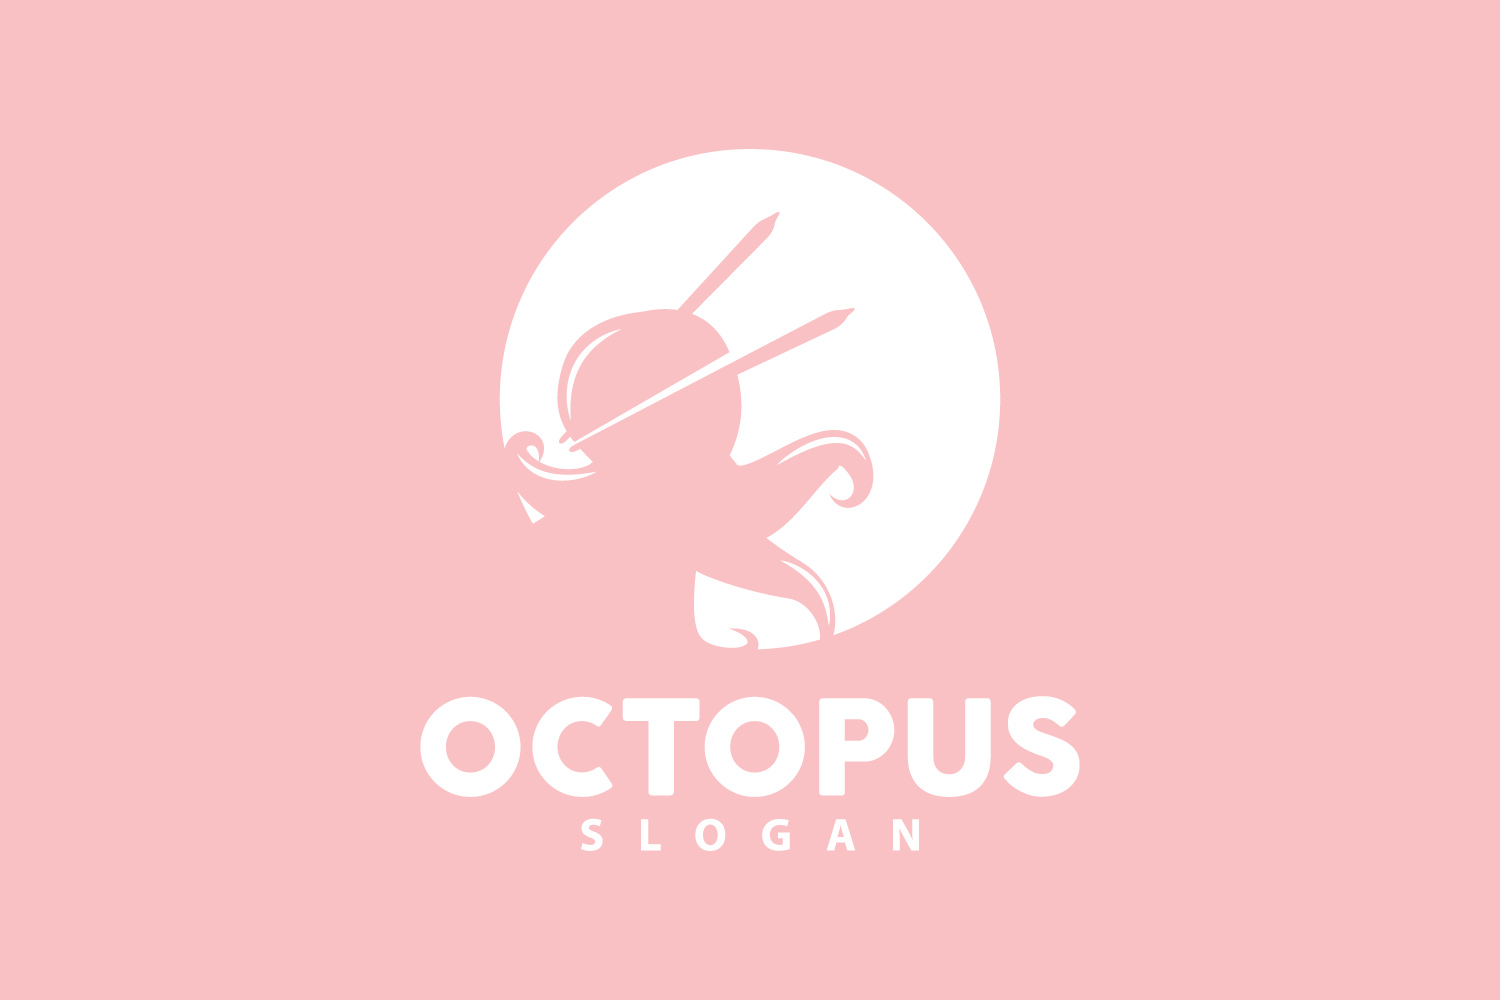 Octopus Logo Old Retro Vintage DesignV12